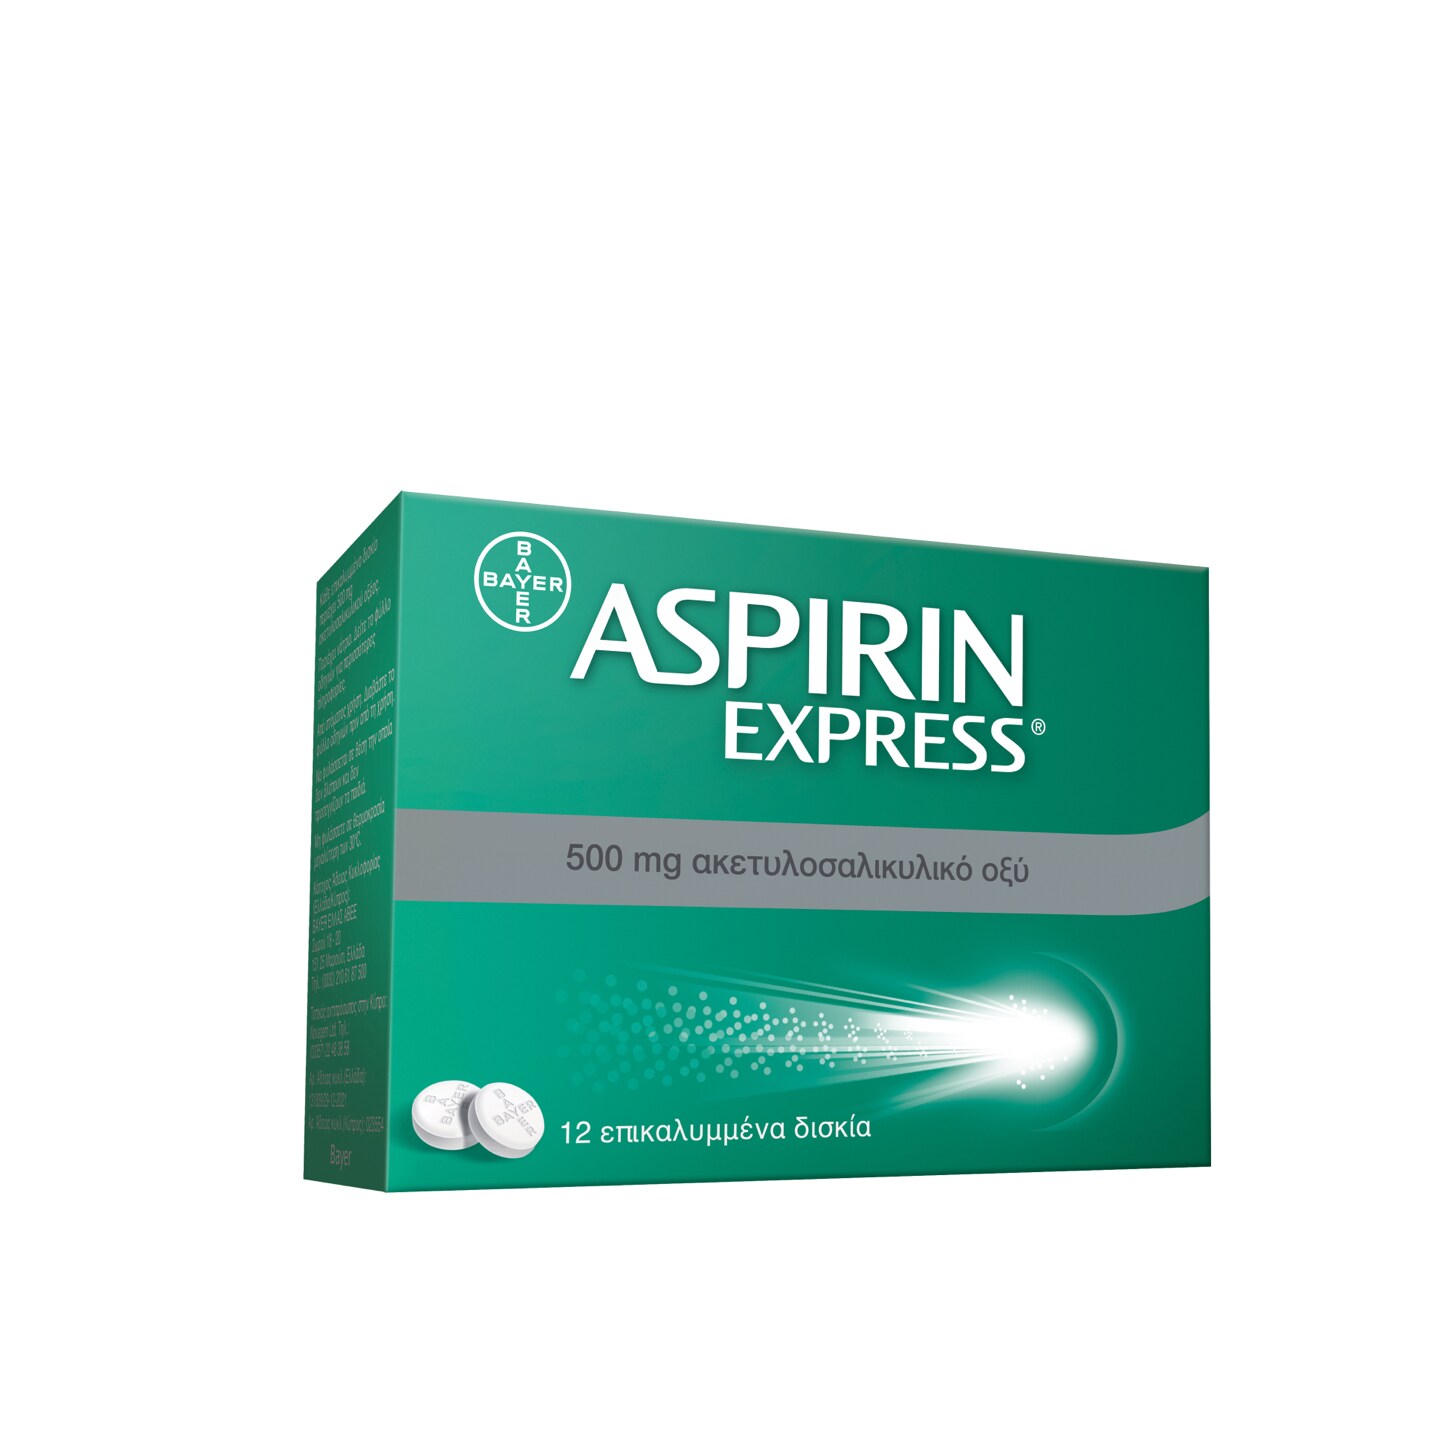 Aspirin Express